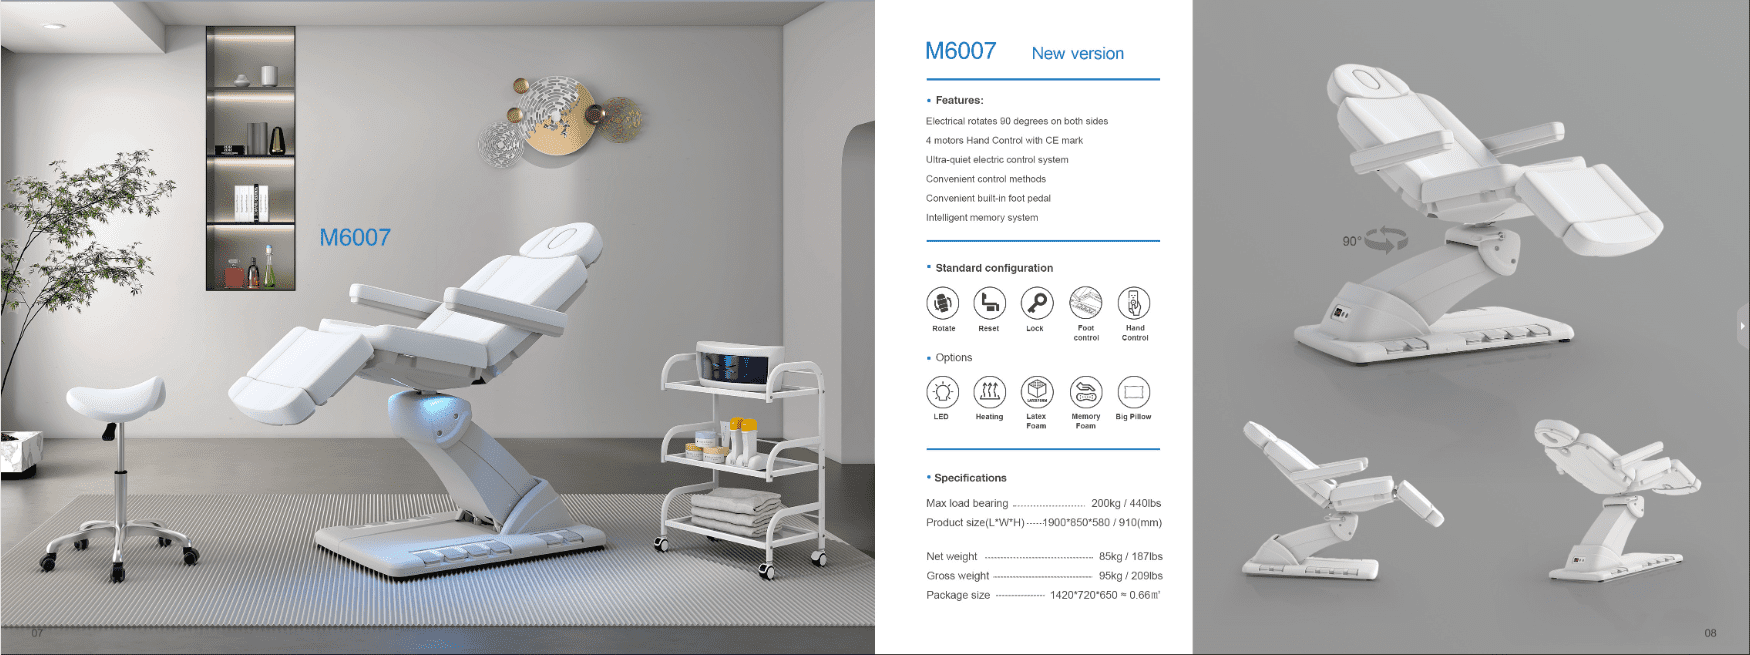 M6007 electric beauty bed description